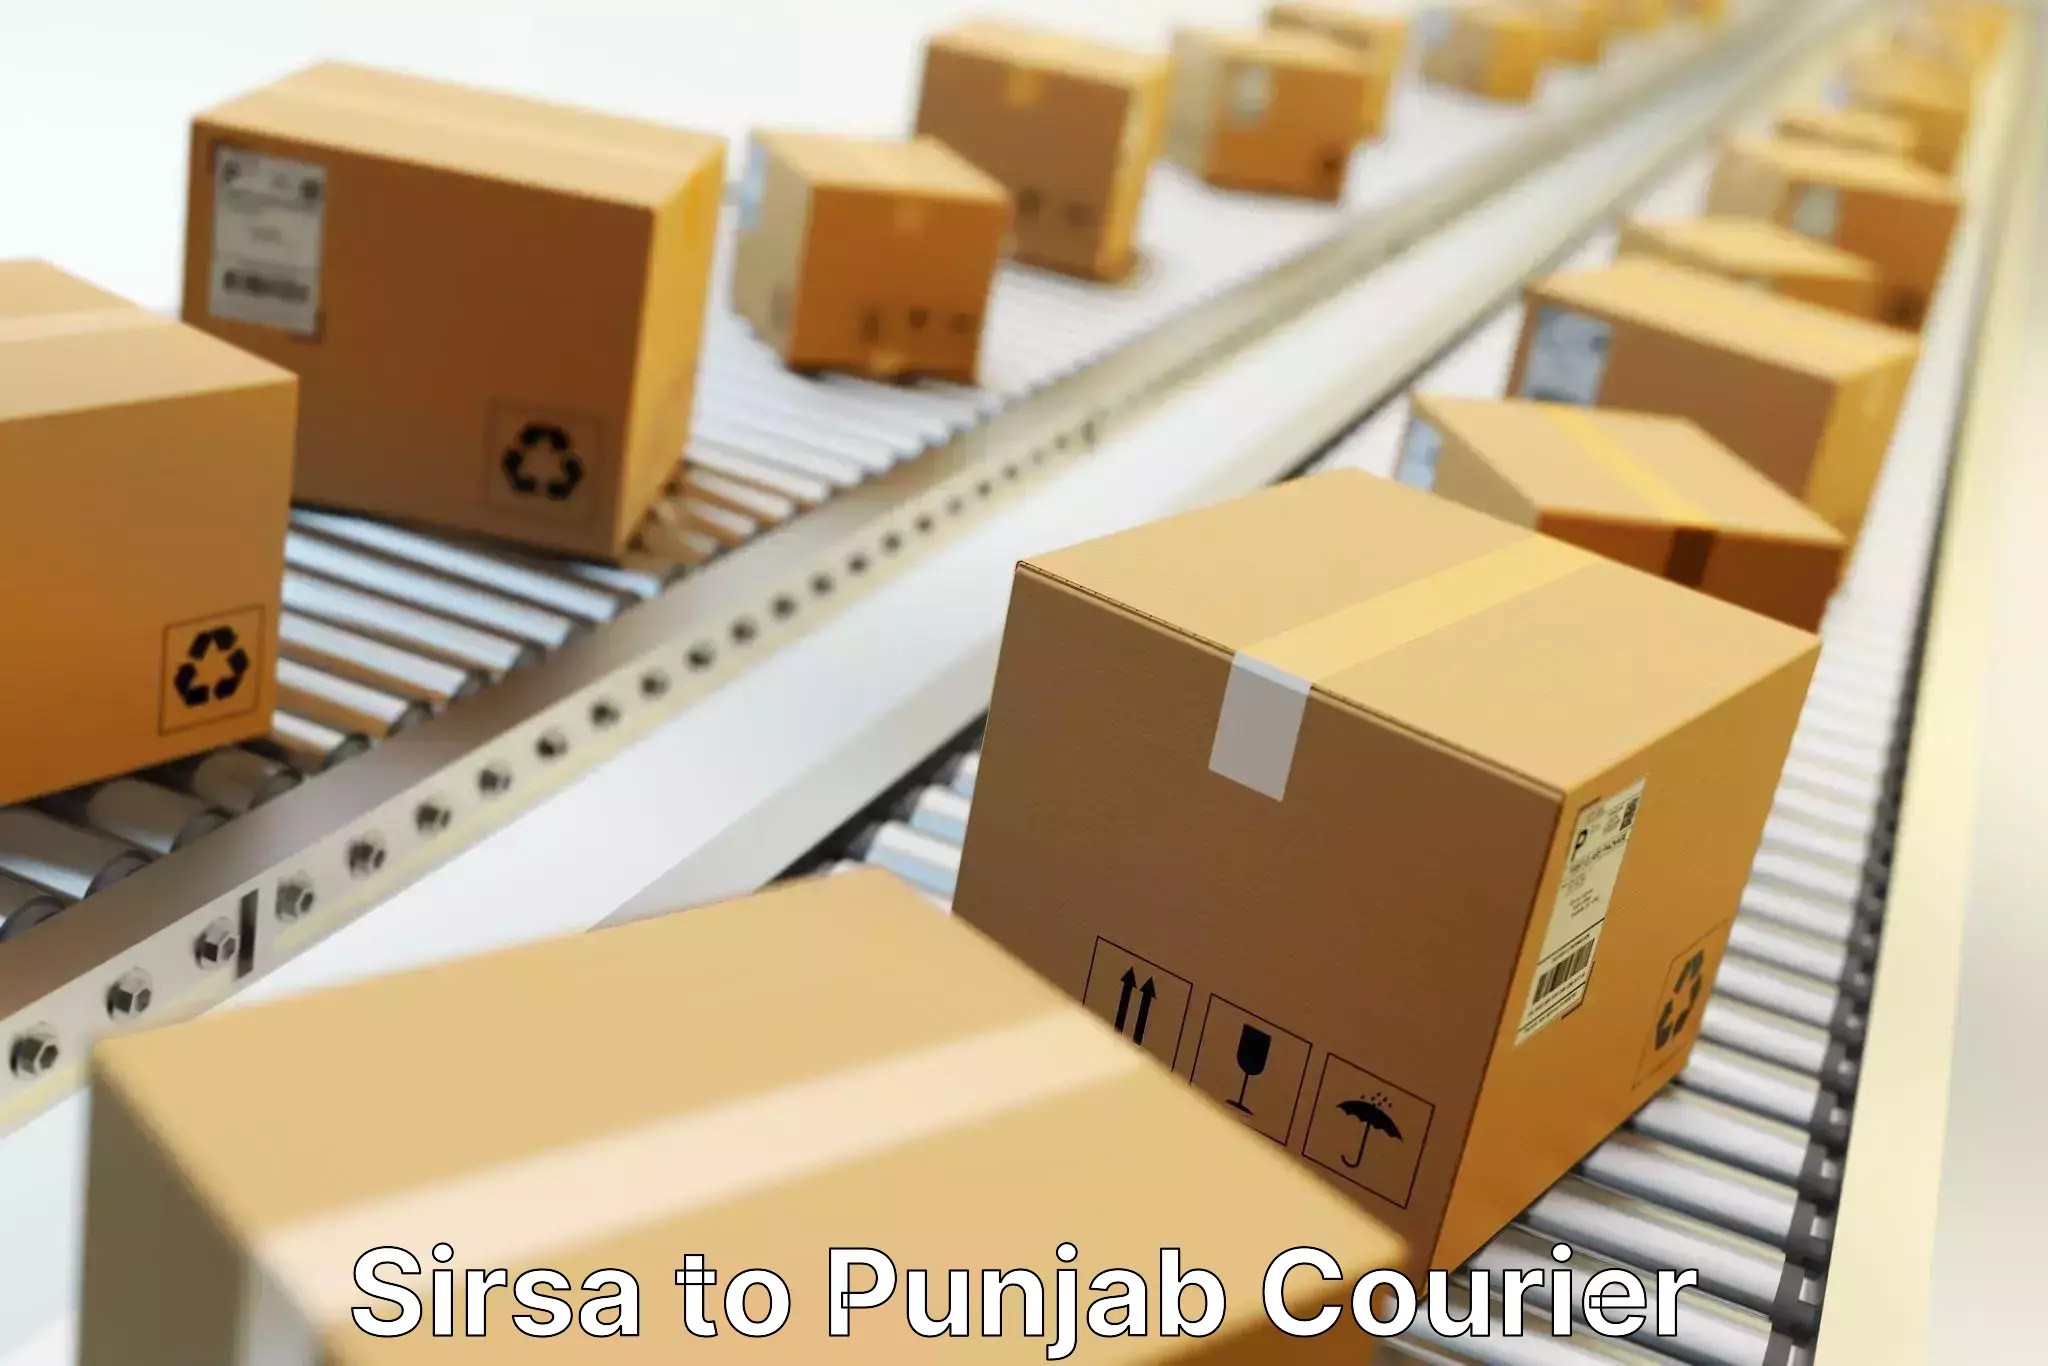 Advanced shipping network Sirsa to Amritsar